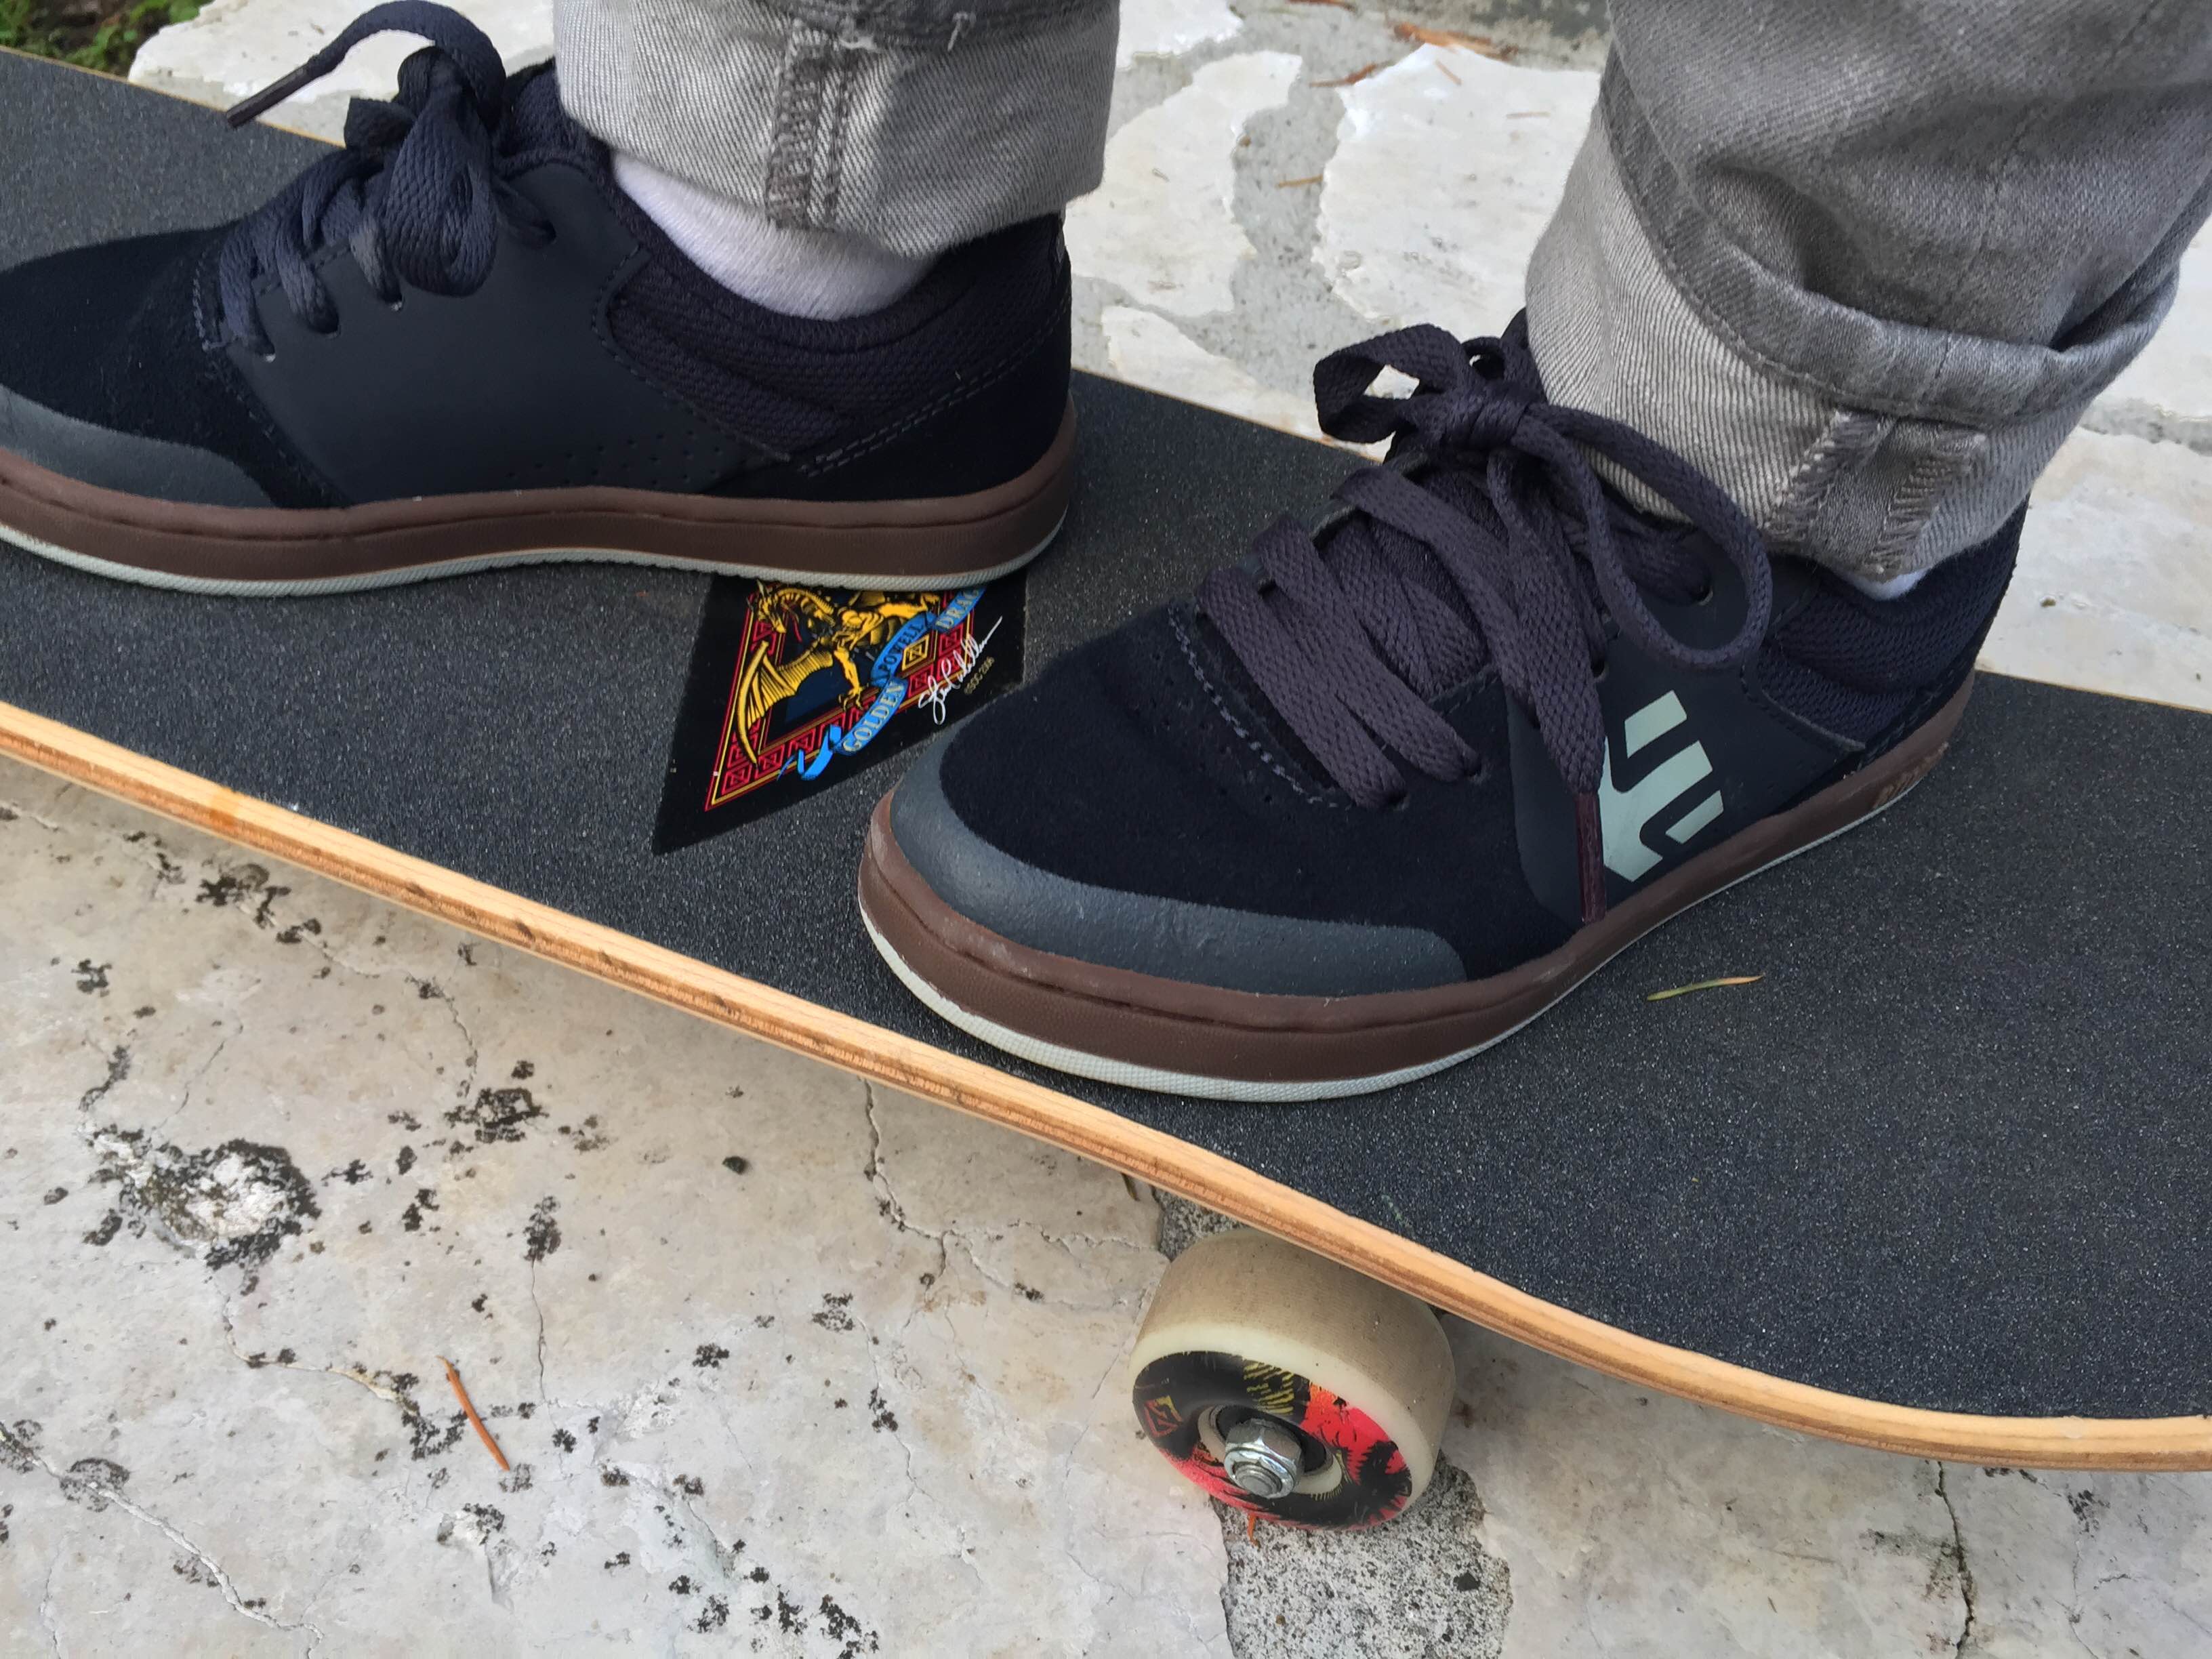 skateboarding shoes for kids